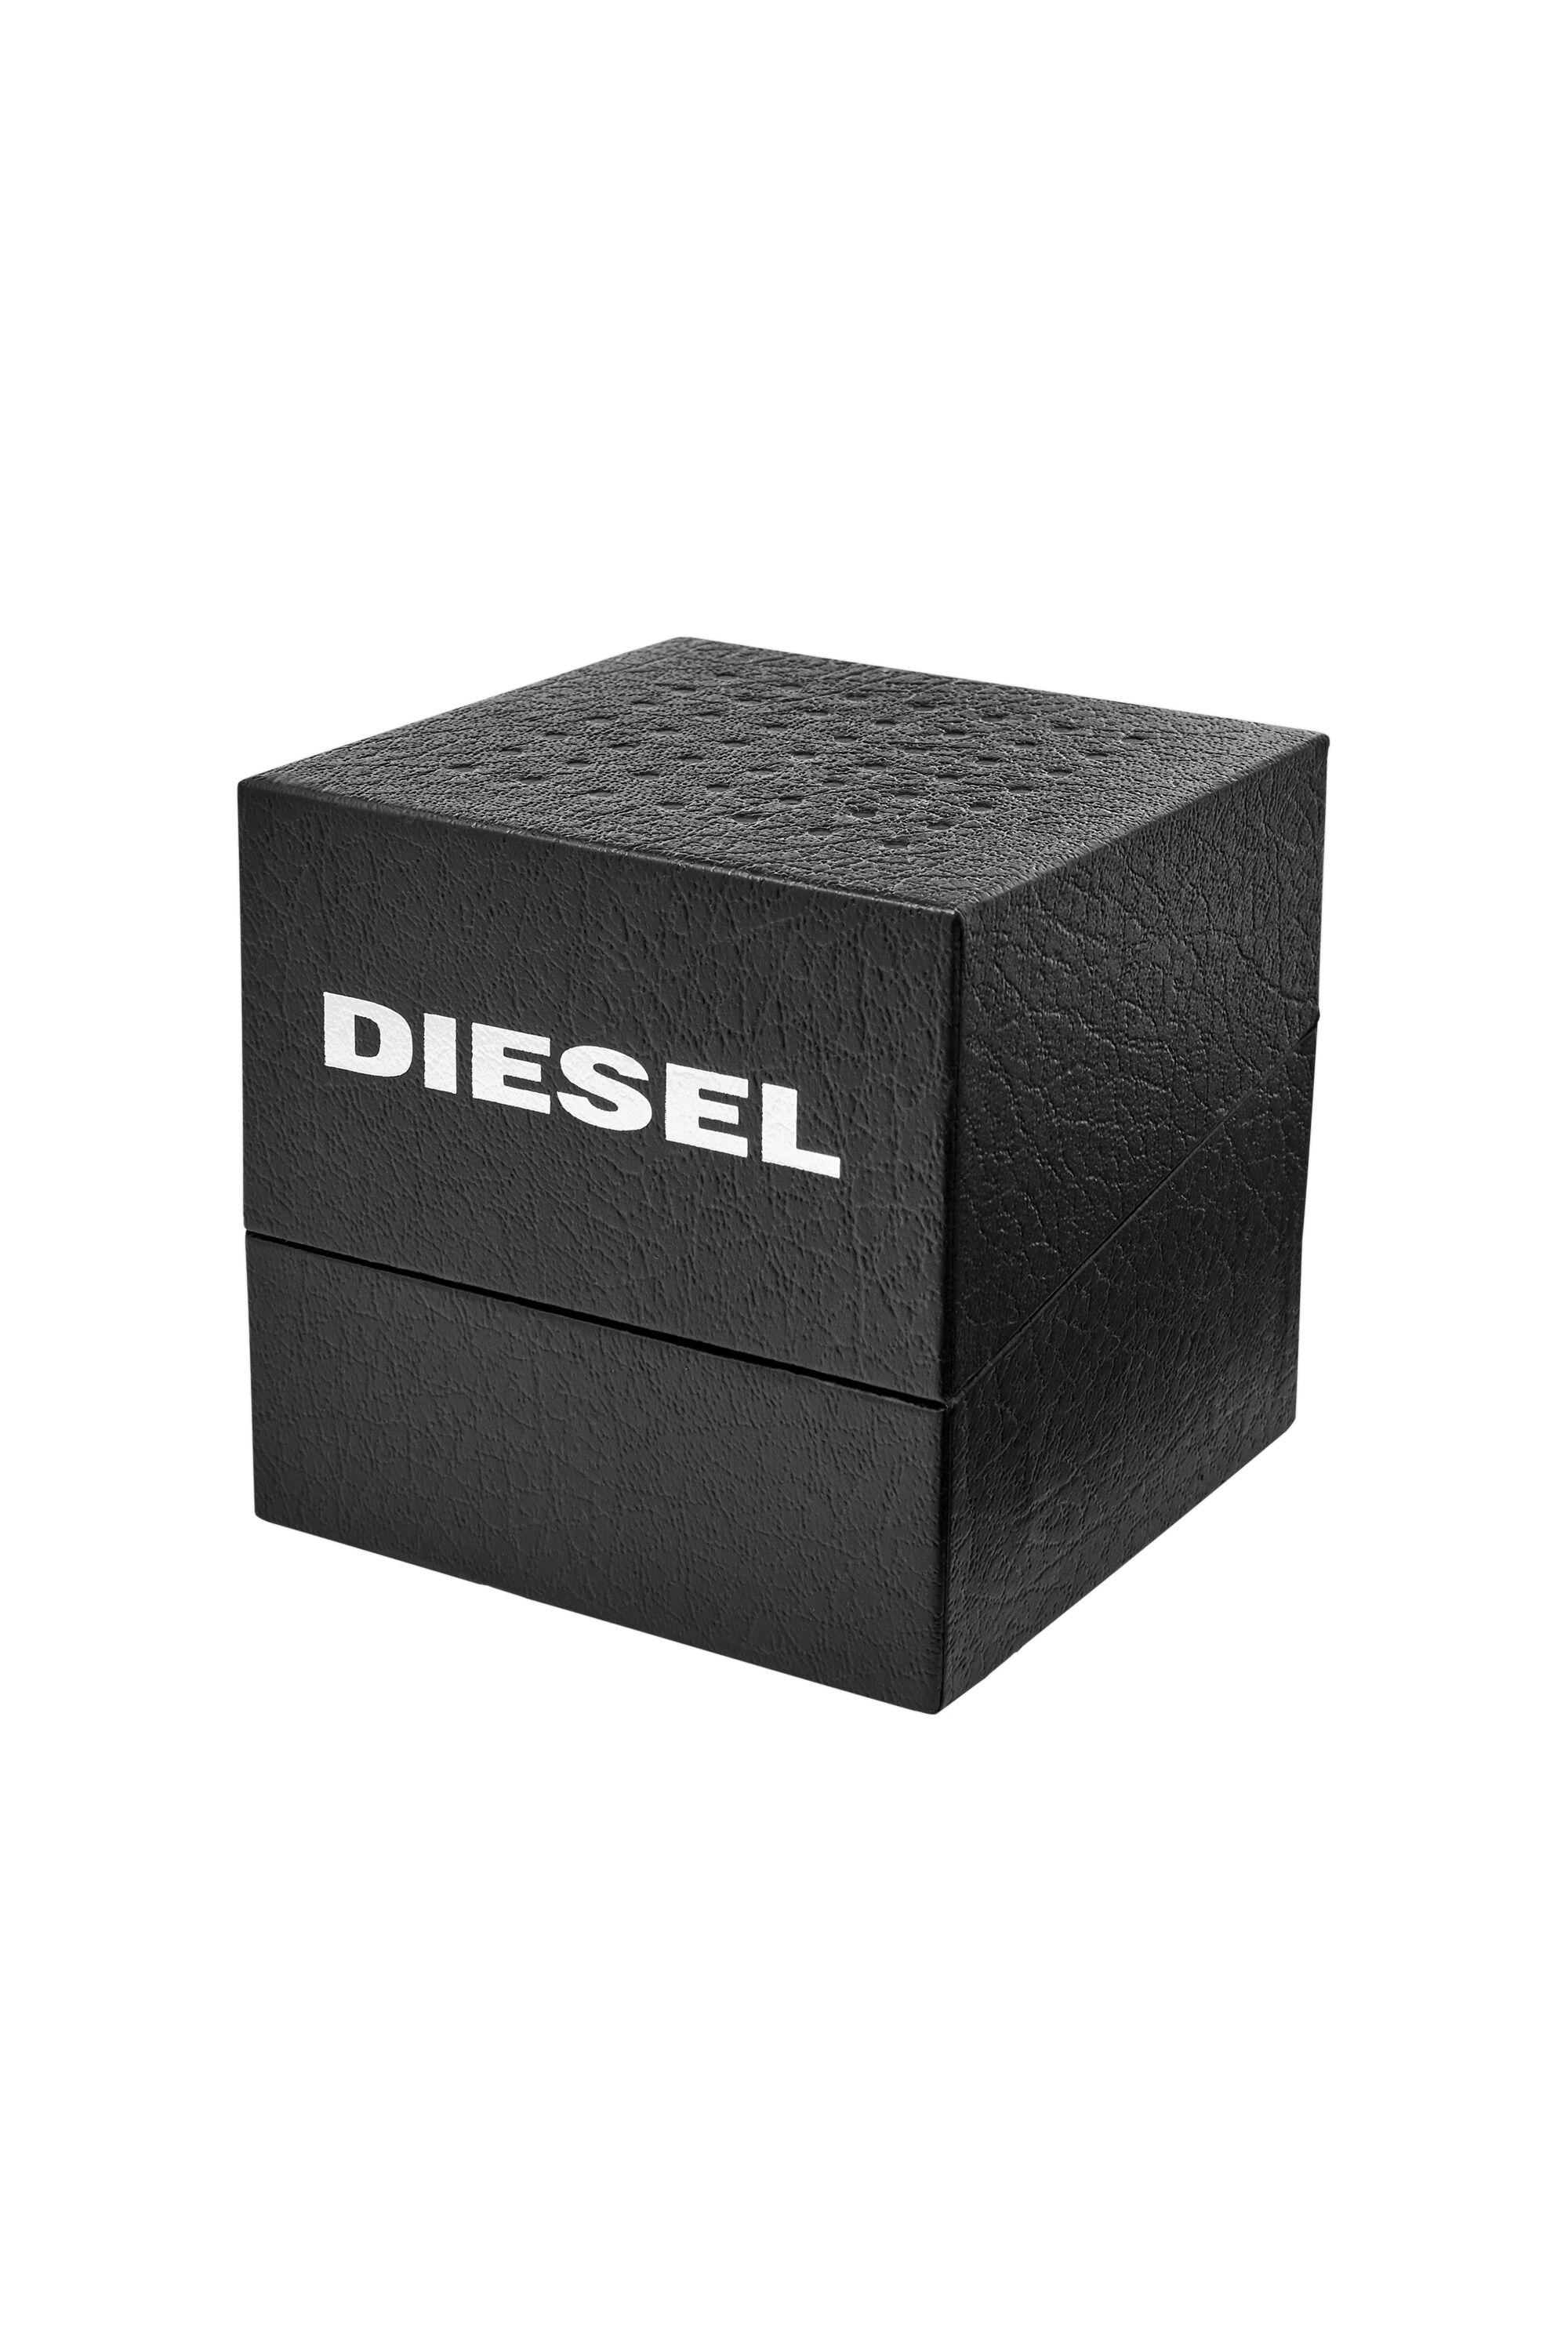 Diesel - DZ1906,  - Image 6